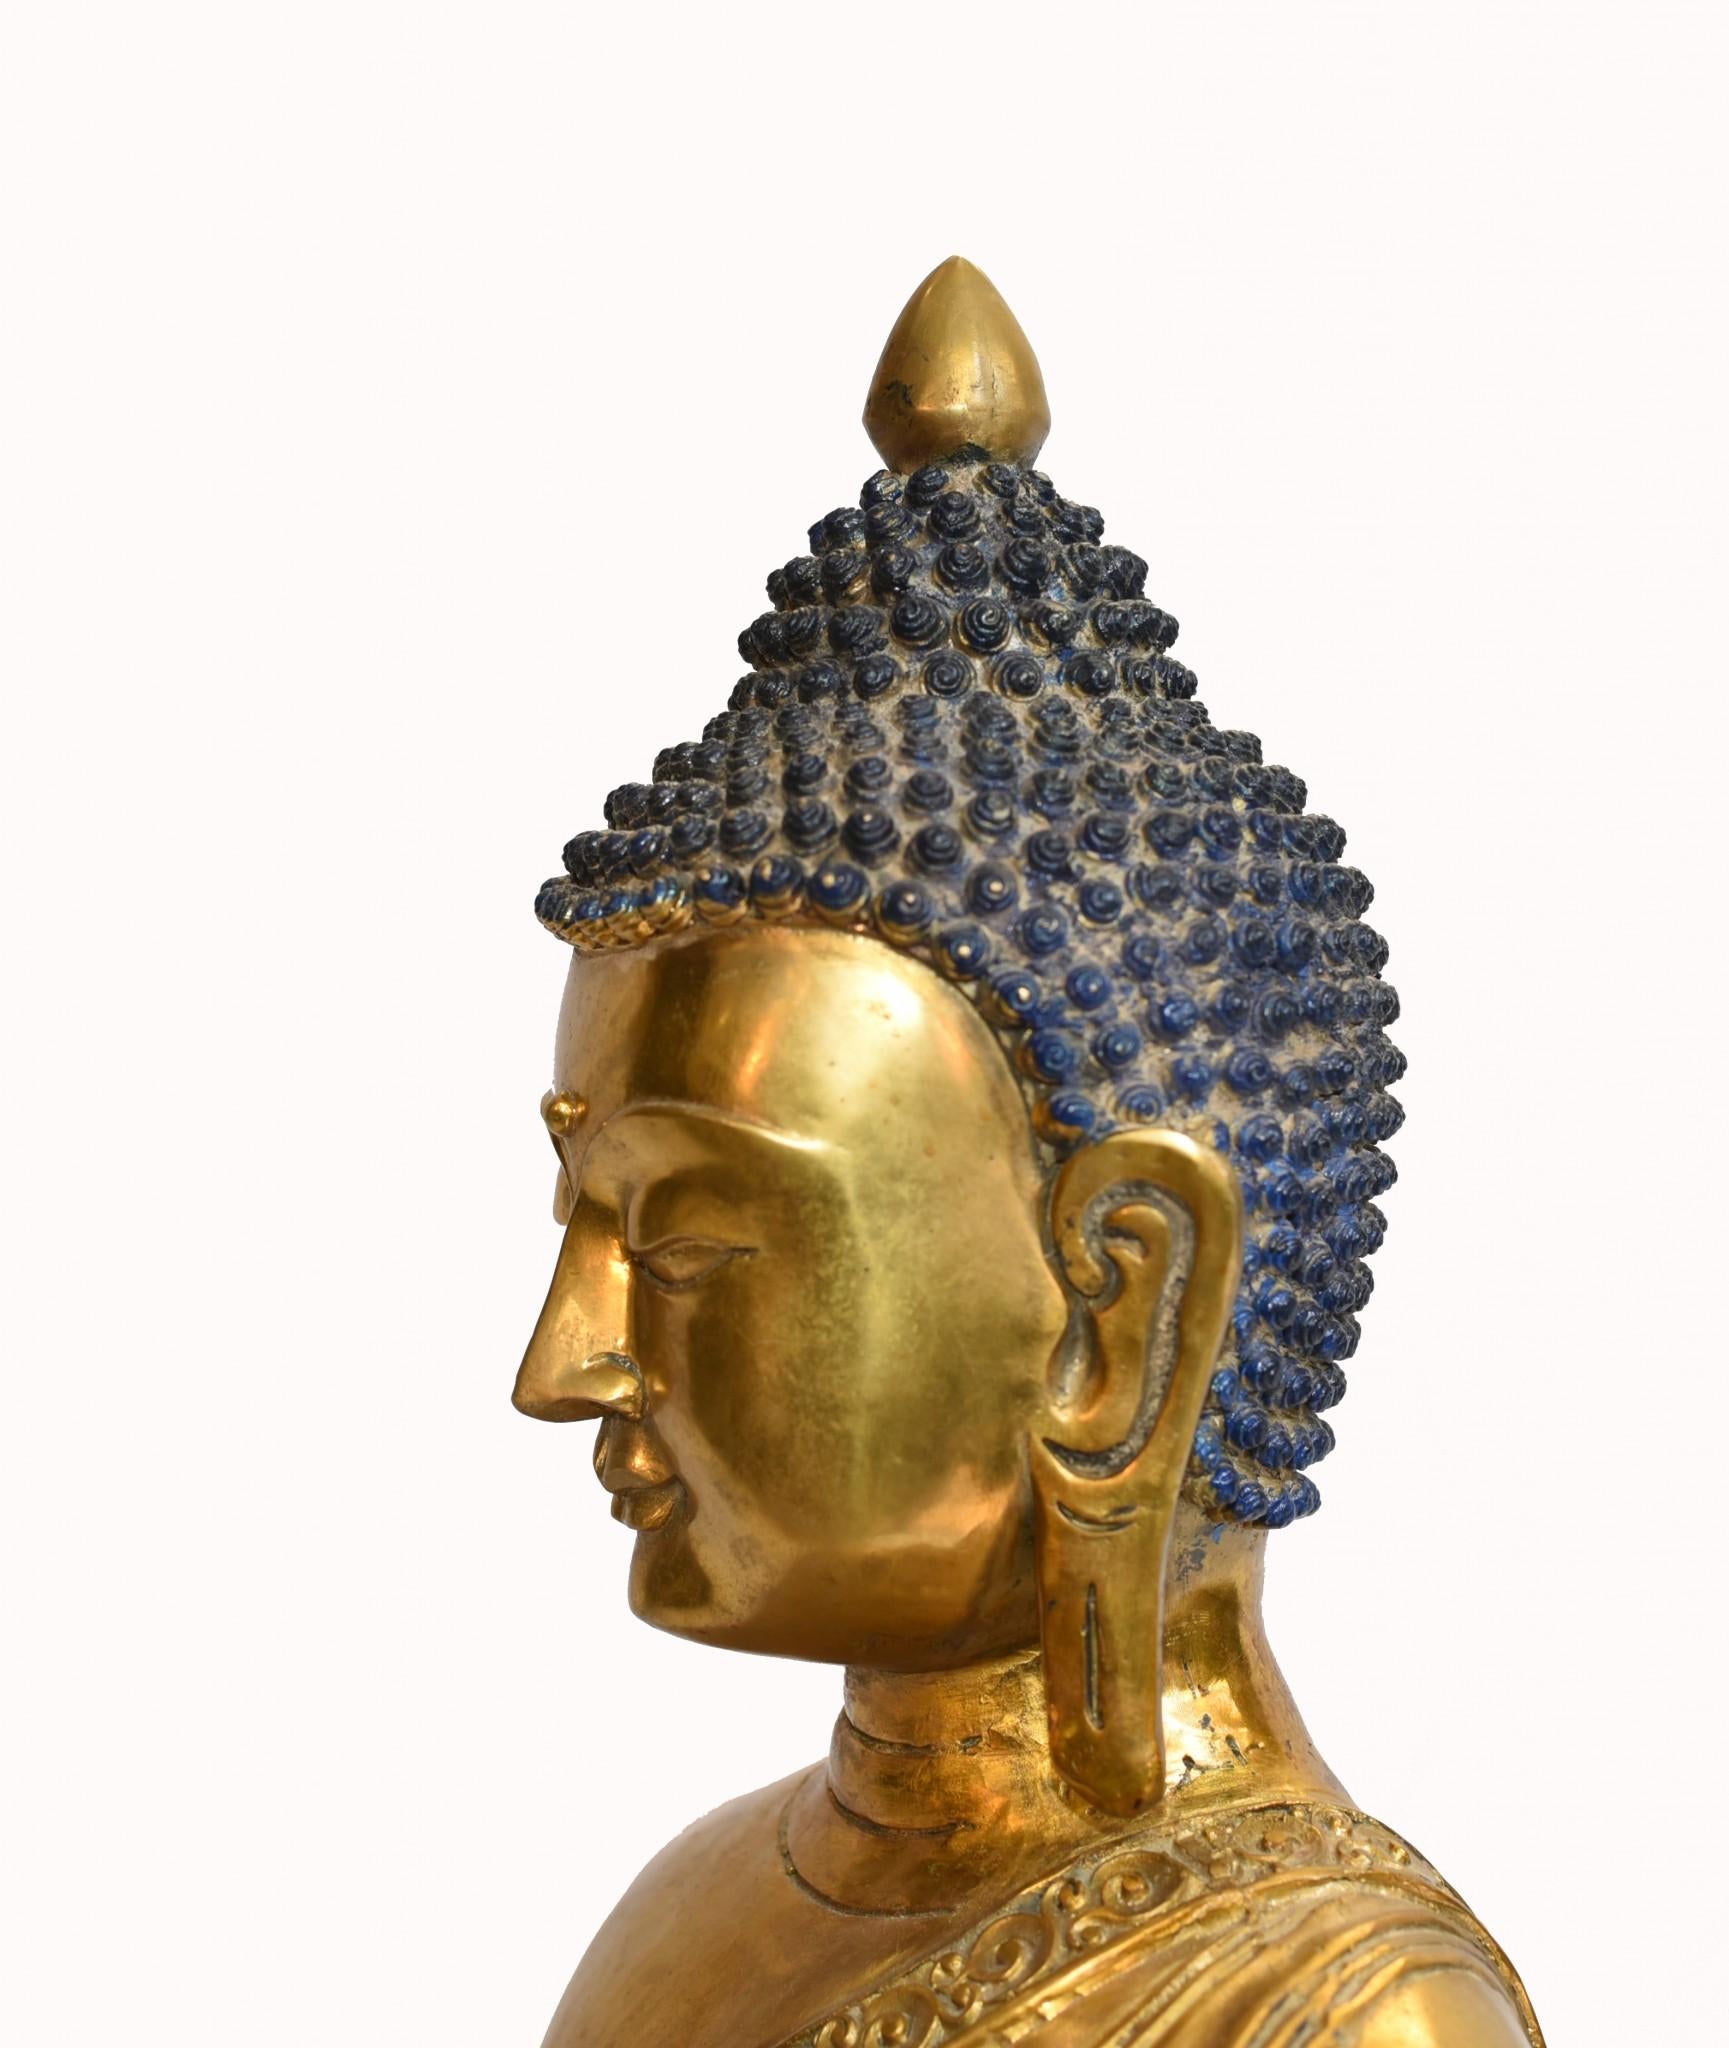 Glorreiche sitzende Buddha-Statue aus Bronze
Der nepalesische Buddha in sitzender Meditationshaltung
Da es sich um Bronze handelt, kann es im Freien leben, ohne zu rosten.
Verleiht jedem Raum oder Außenbereich Licht und Gelassenheit, ideal für einen